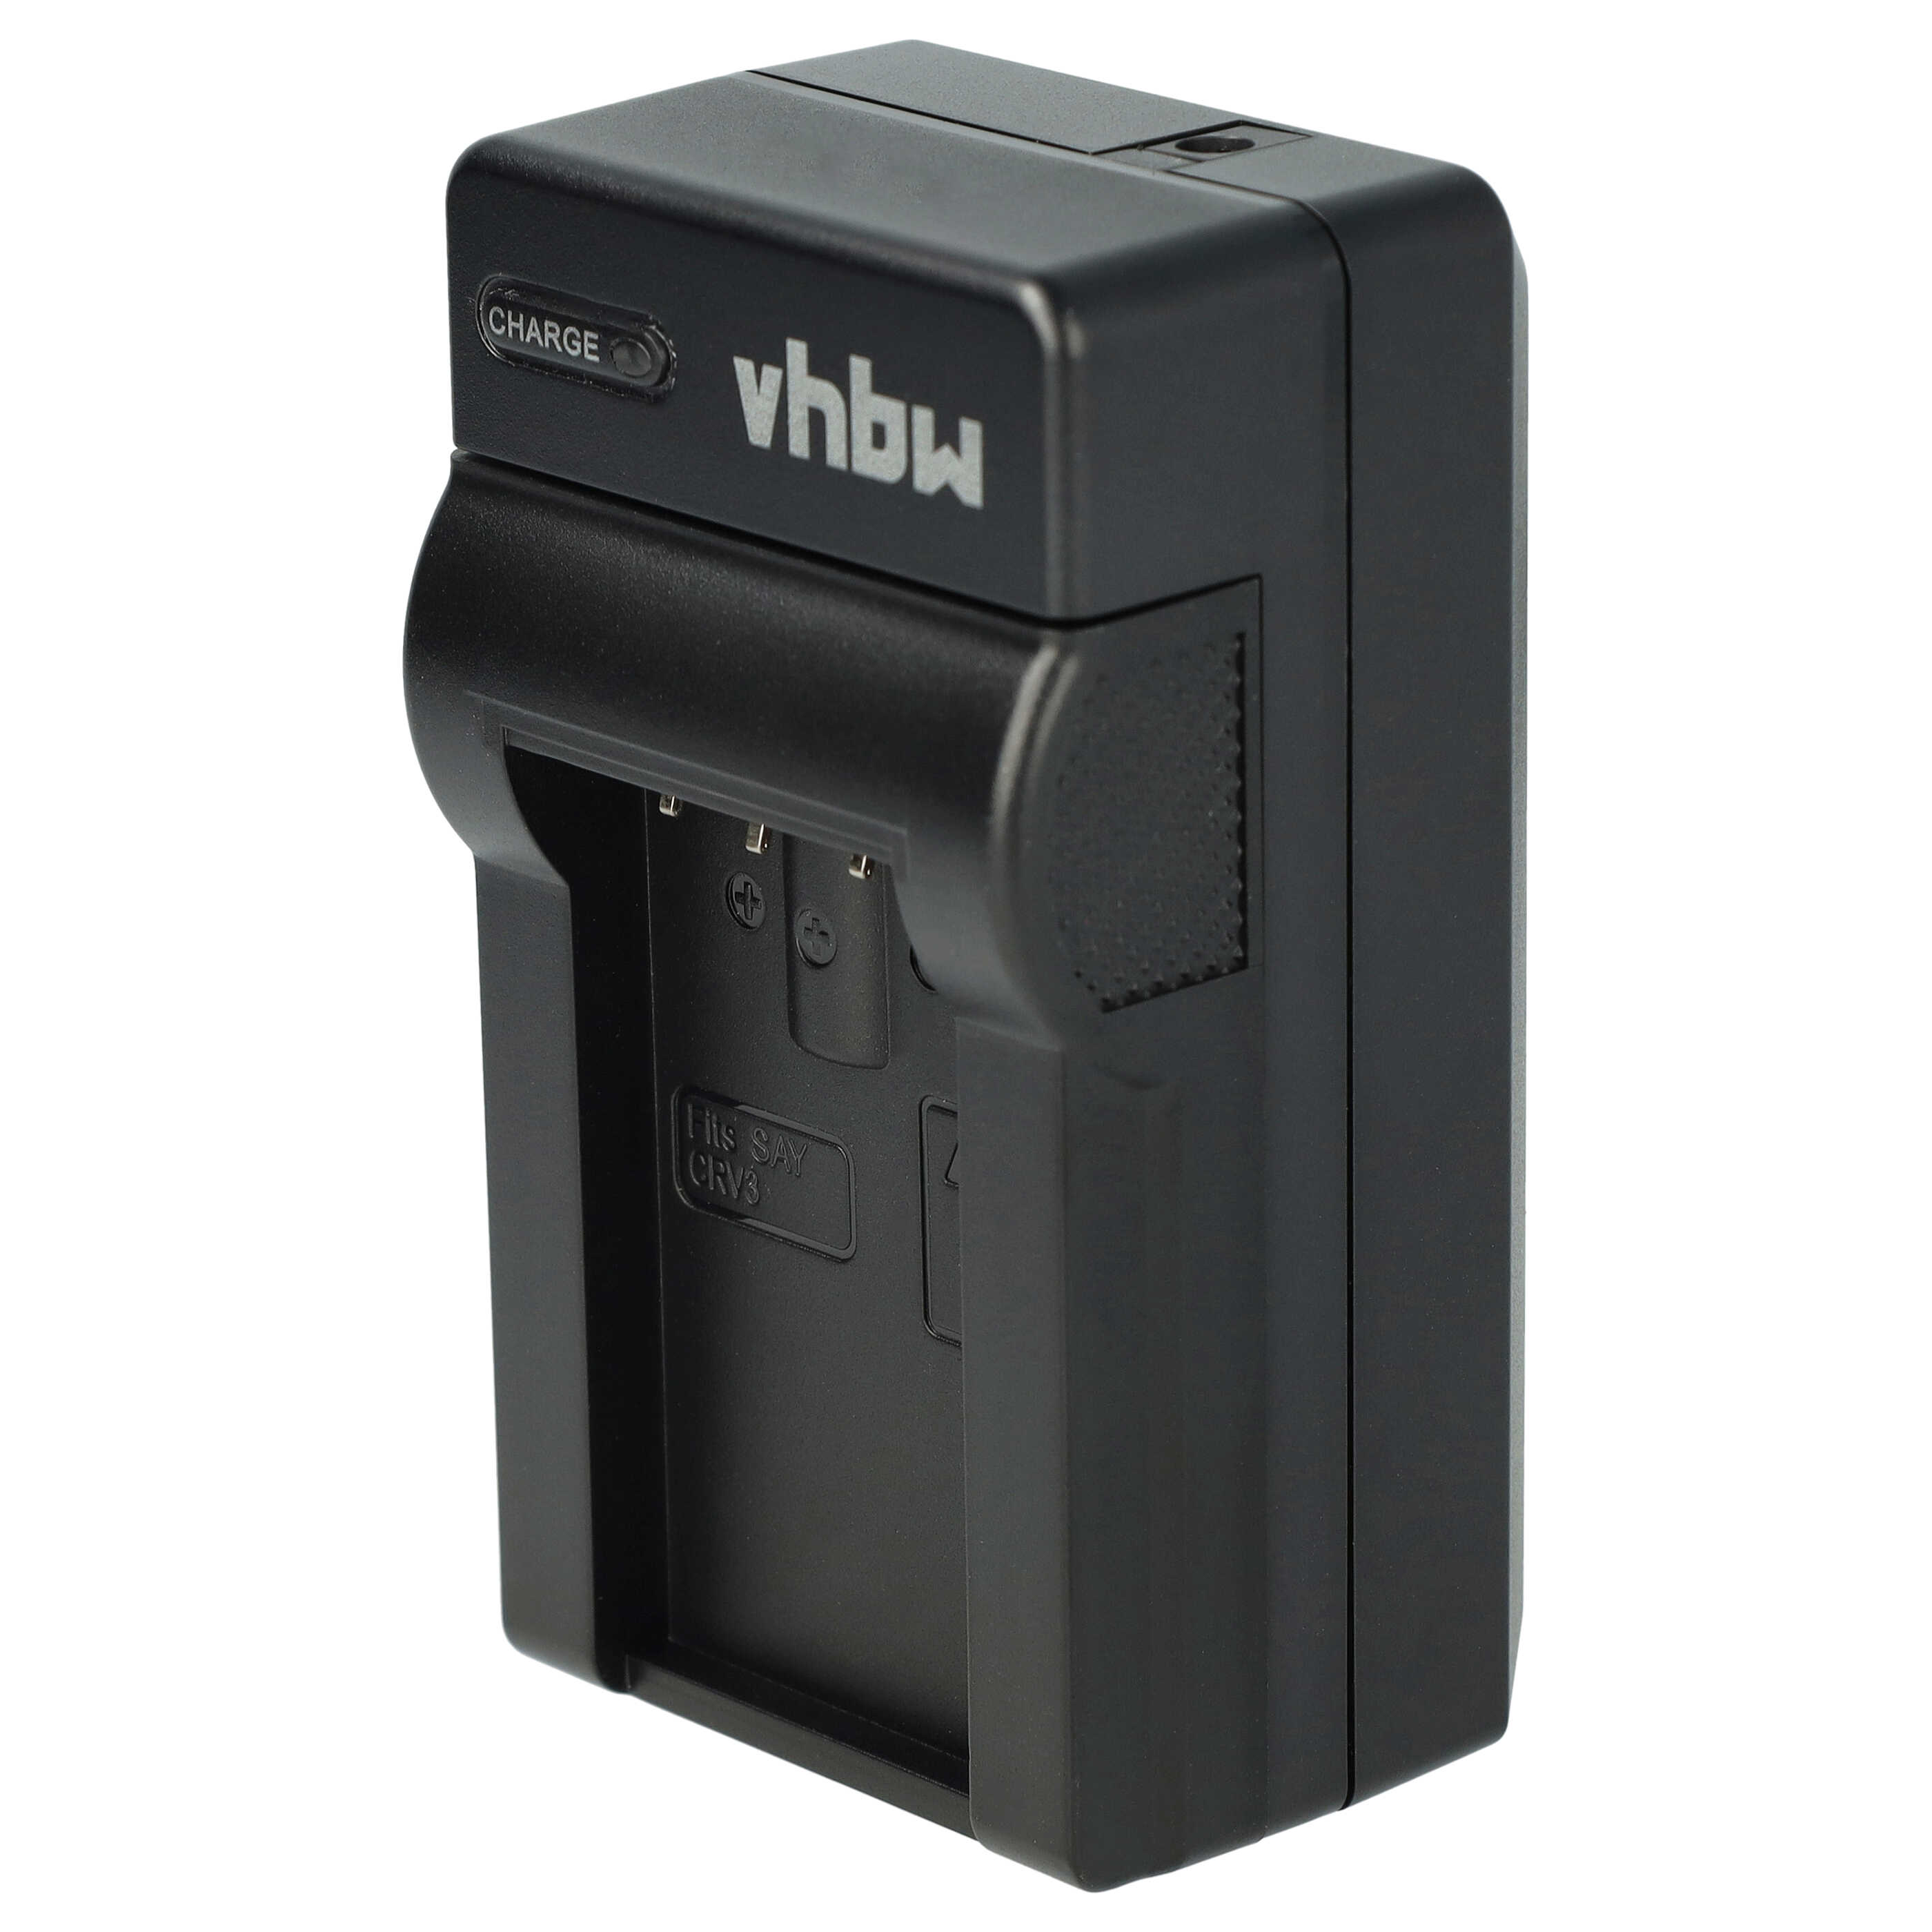 Akku Ladegerät passend für Toshiba Digitalkamera und weitere - 0,6 A, 4,8 V